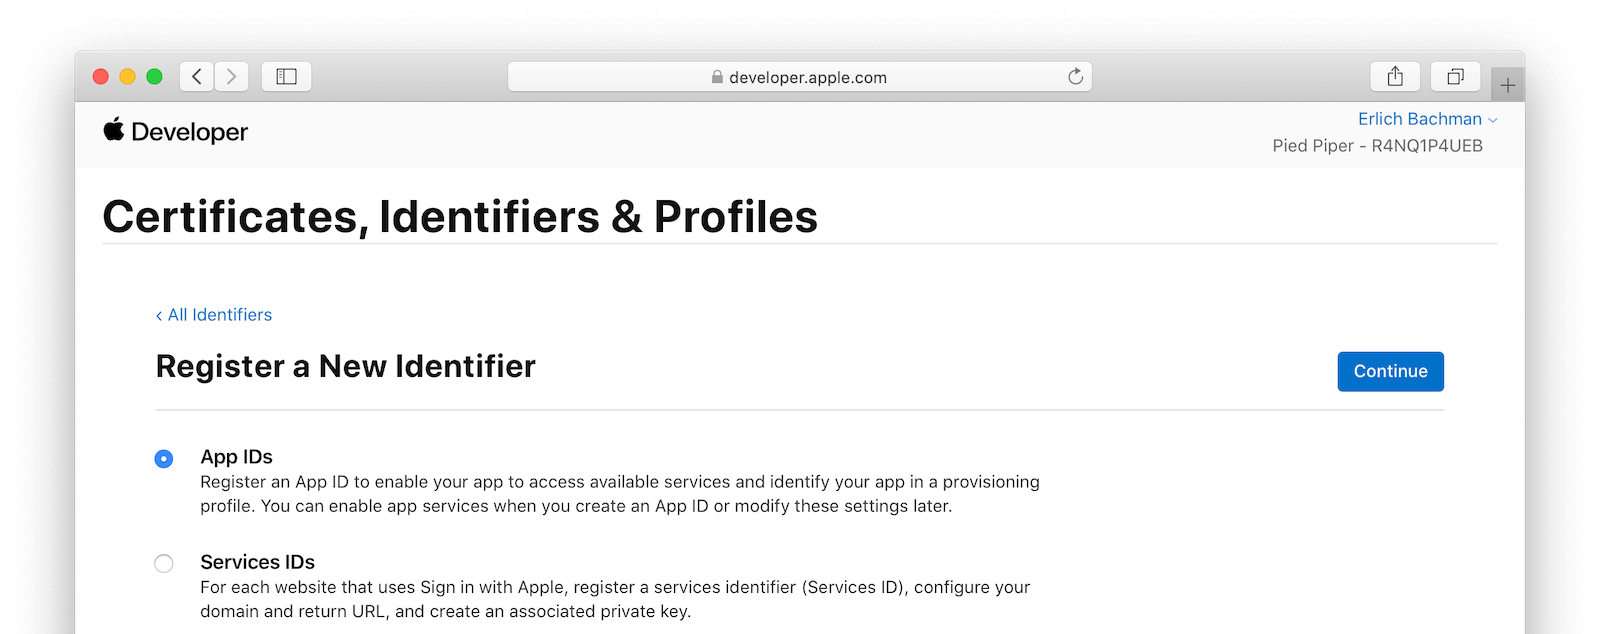 Register a new Identifier